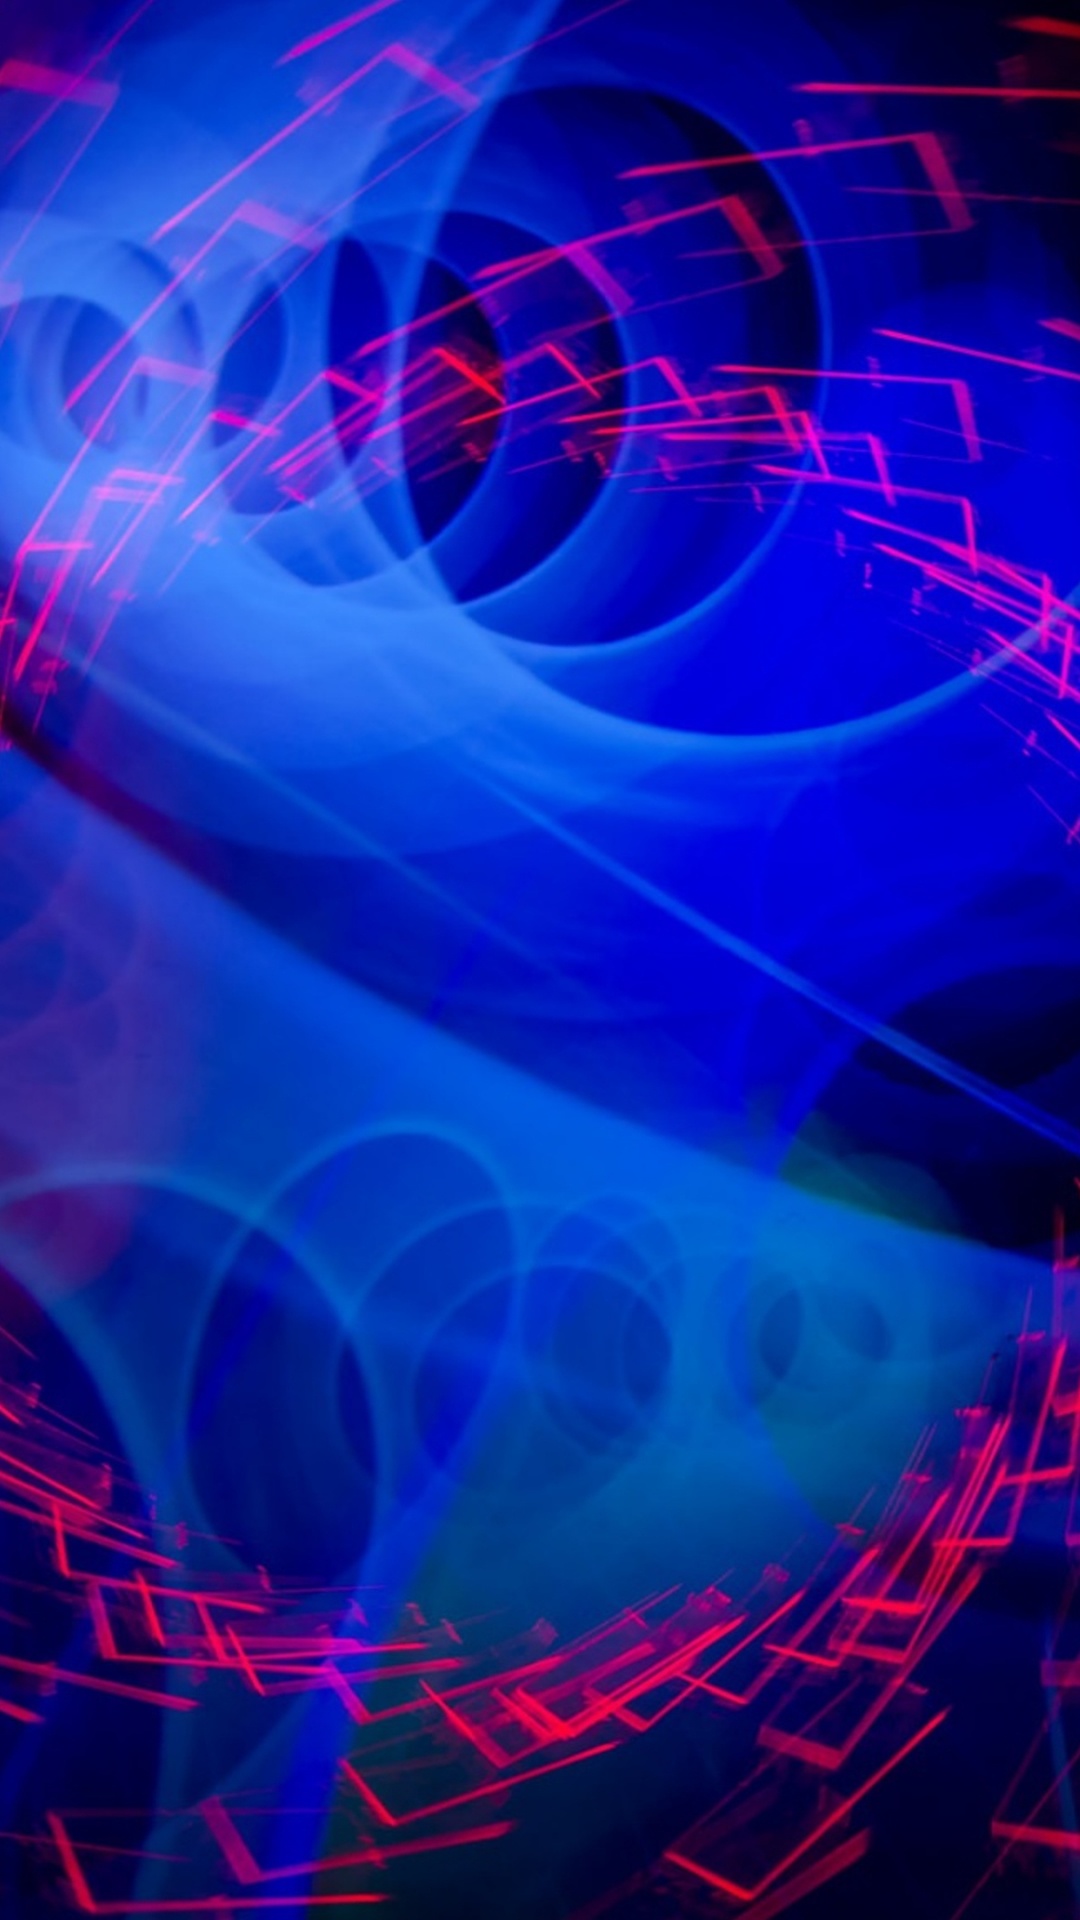 Papel Tapiz Digital de Luz Azul y Roja. Wallpaper in 1080x1920 Resolution